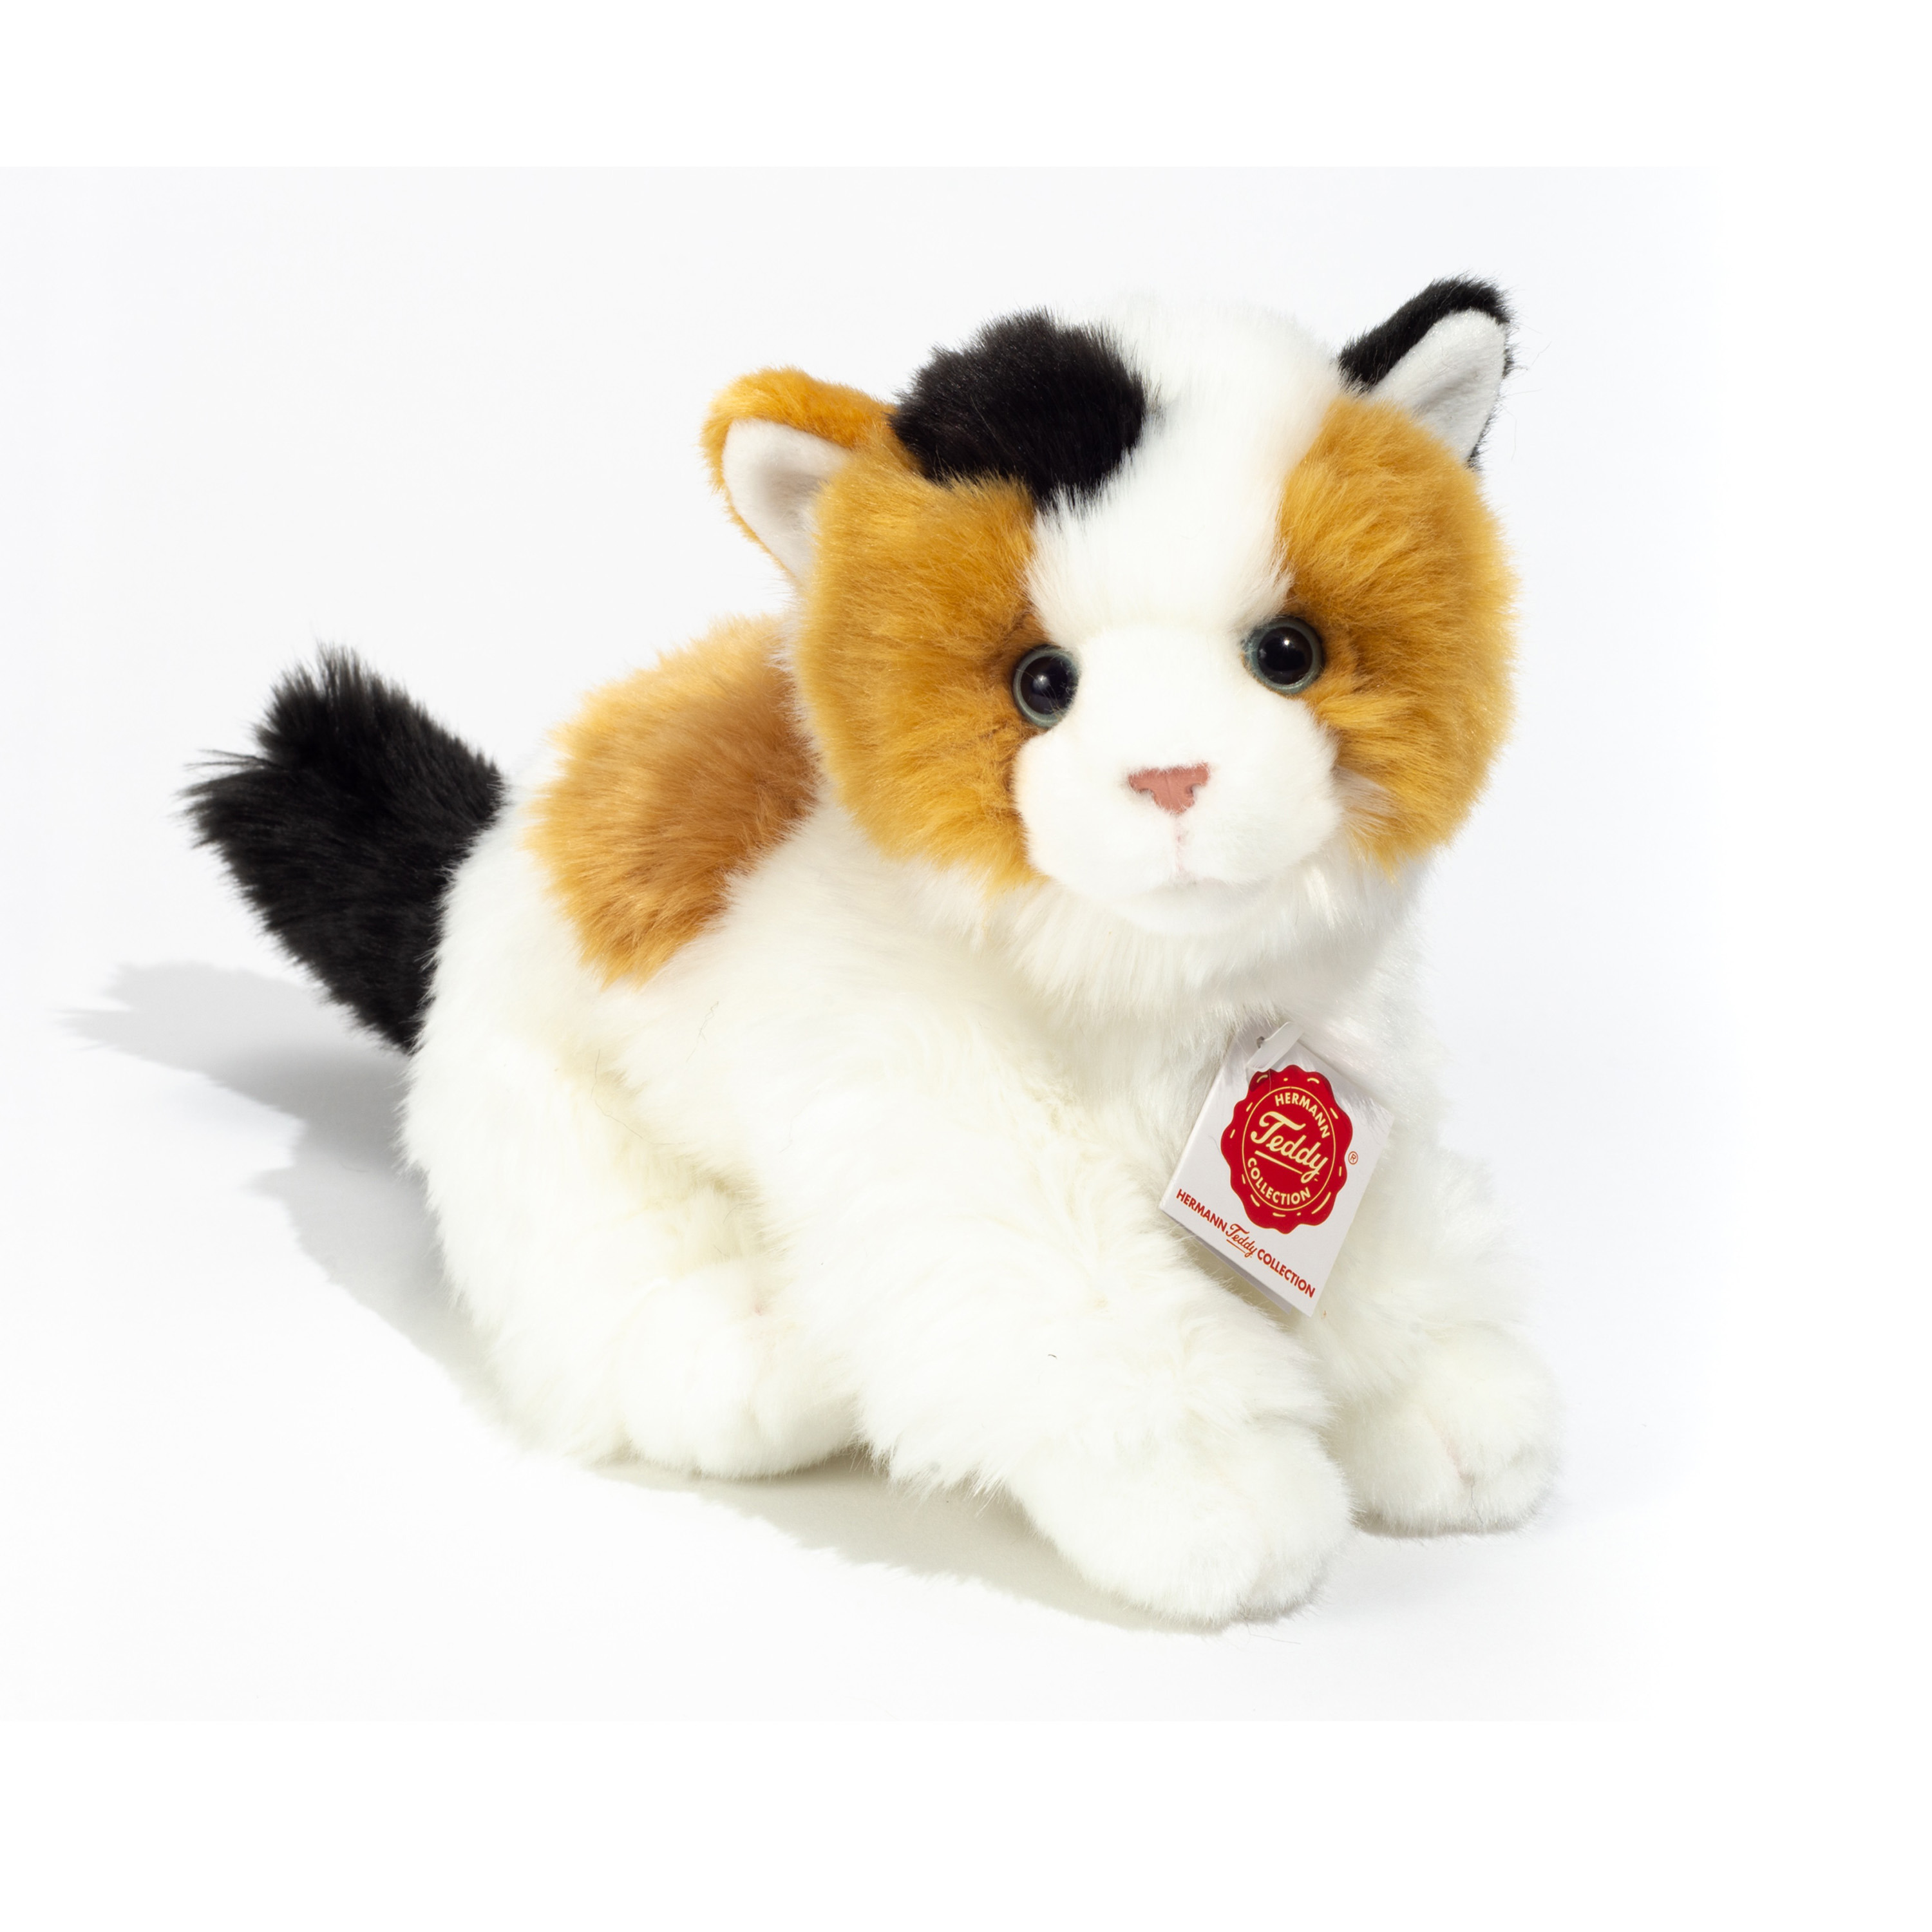 Knuffeldier kat-poes zachte pluche stof premium kwaliteit knuffels wit-bruin-zwart 24 cm